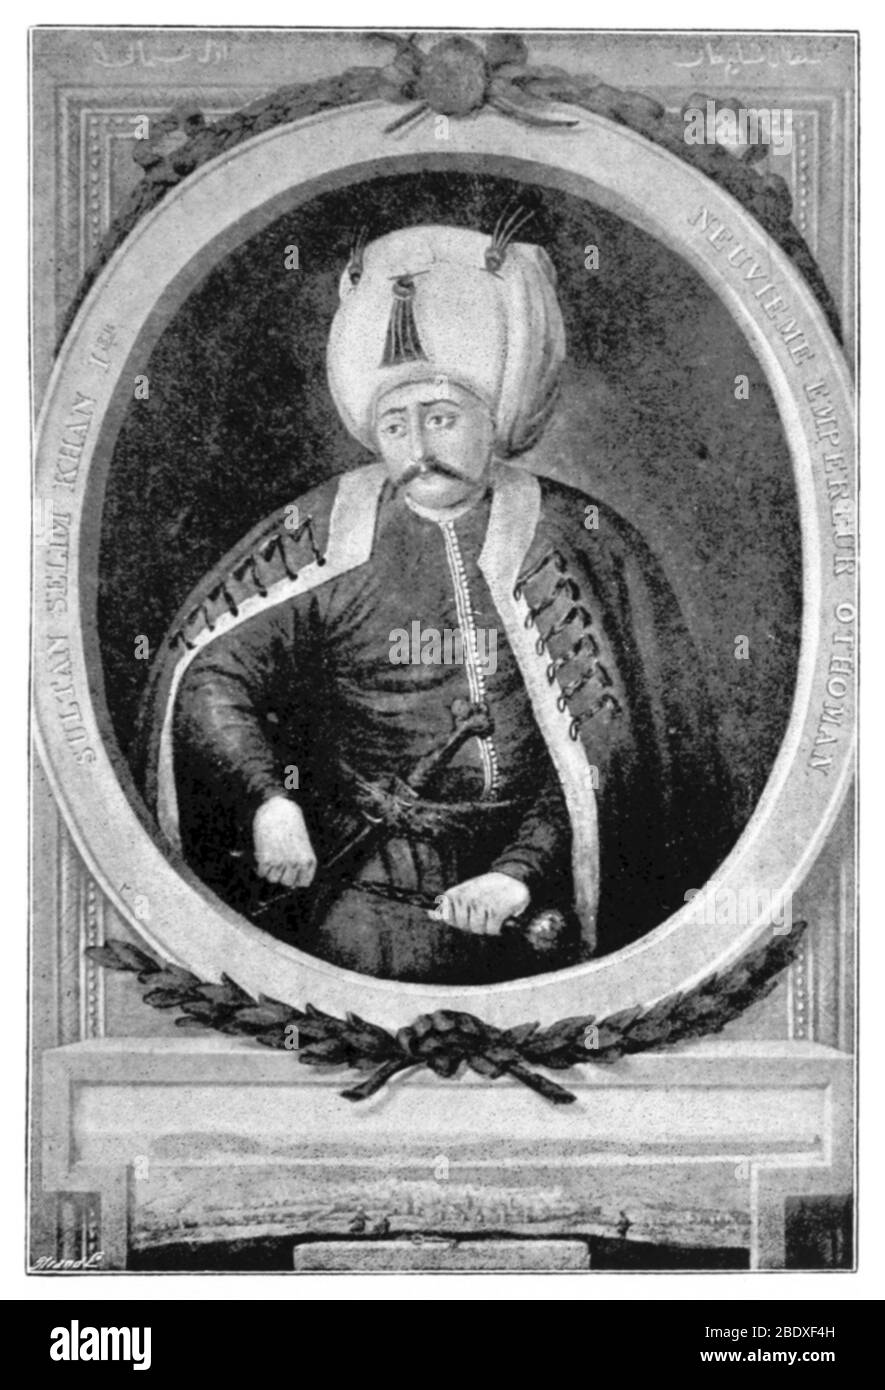 Selim i, Sultano ottomano Foto Stock